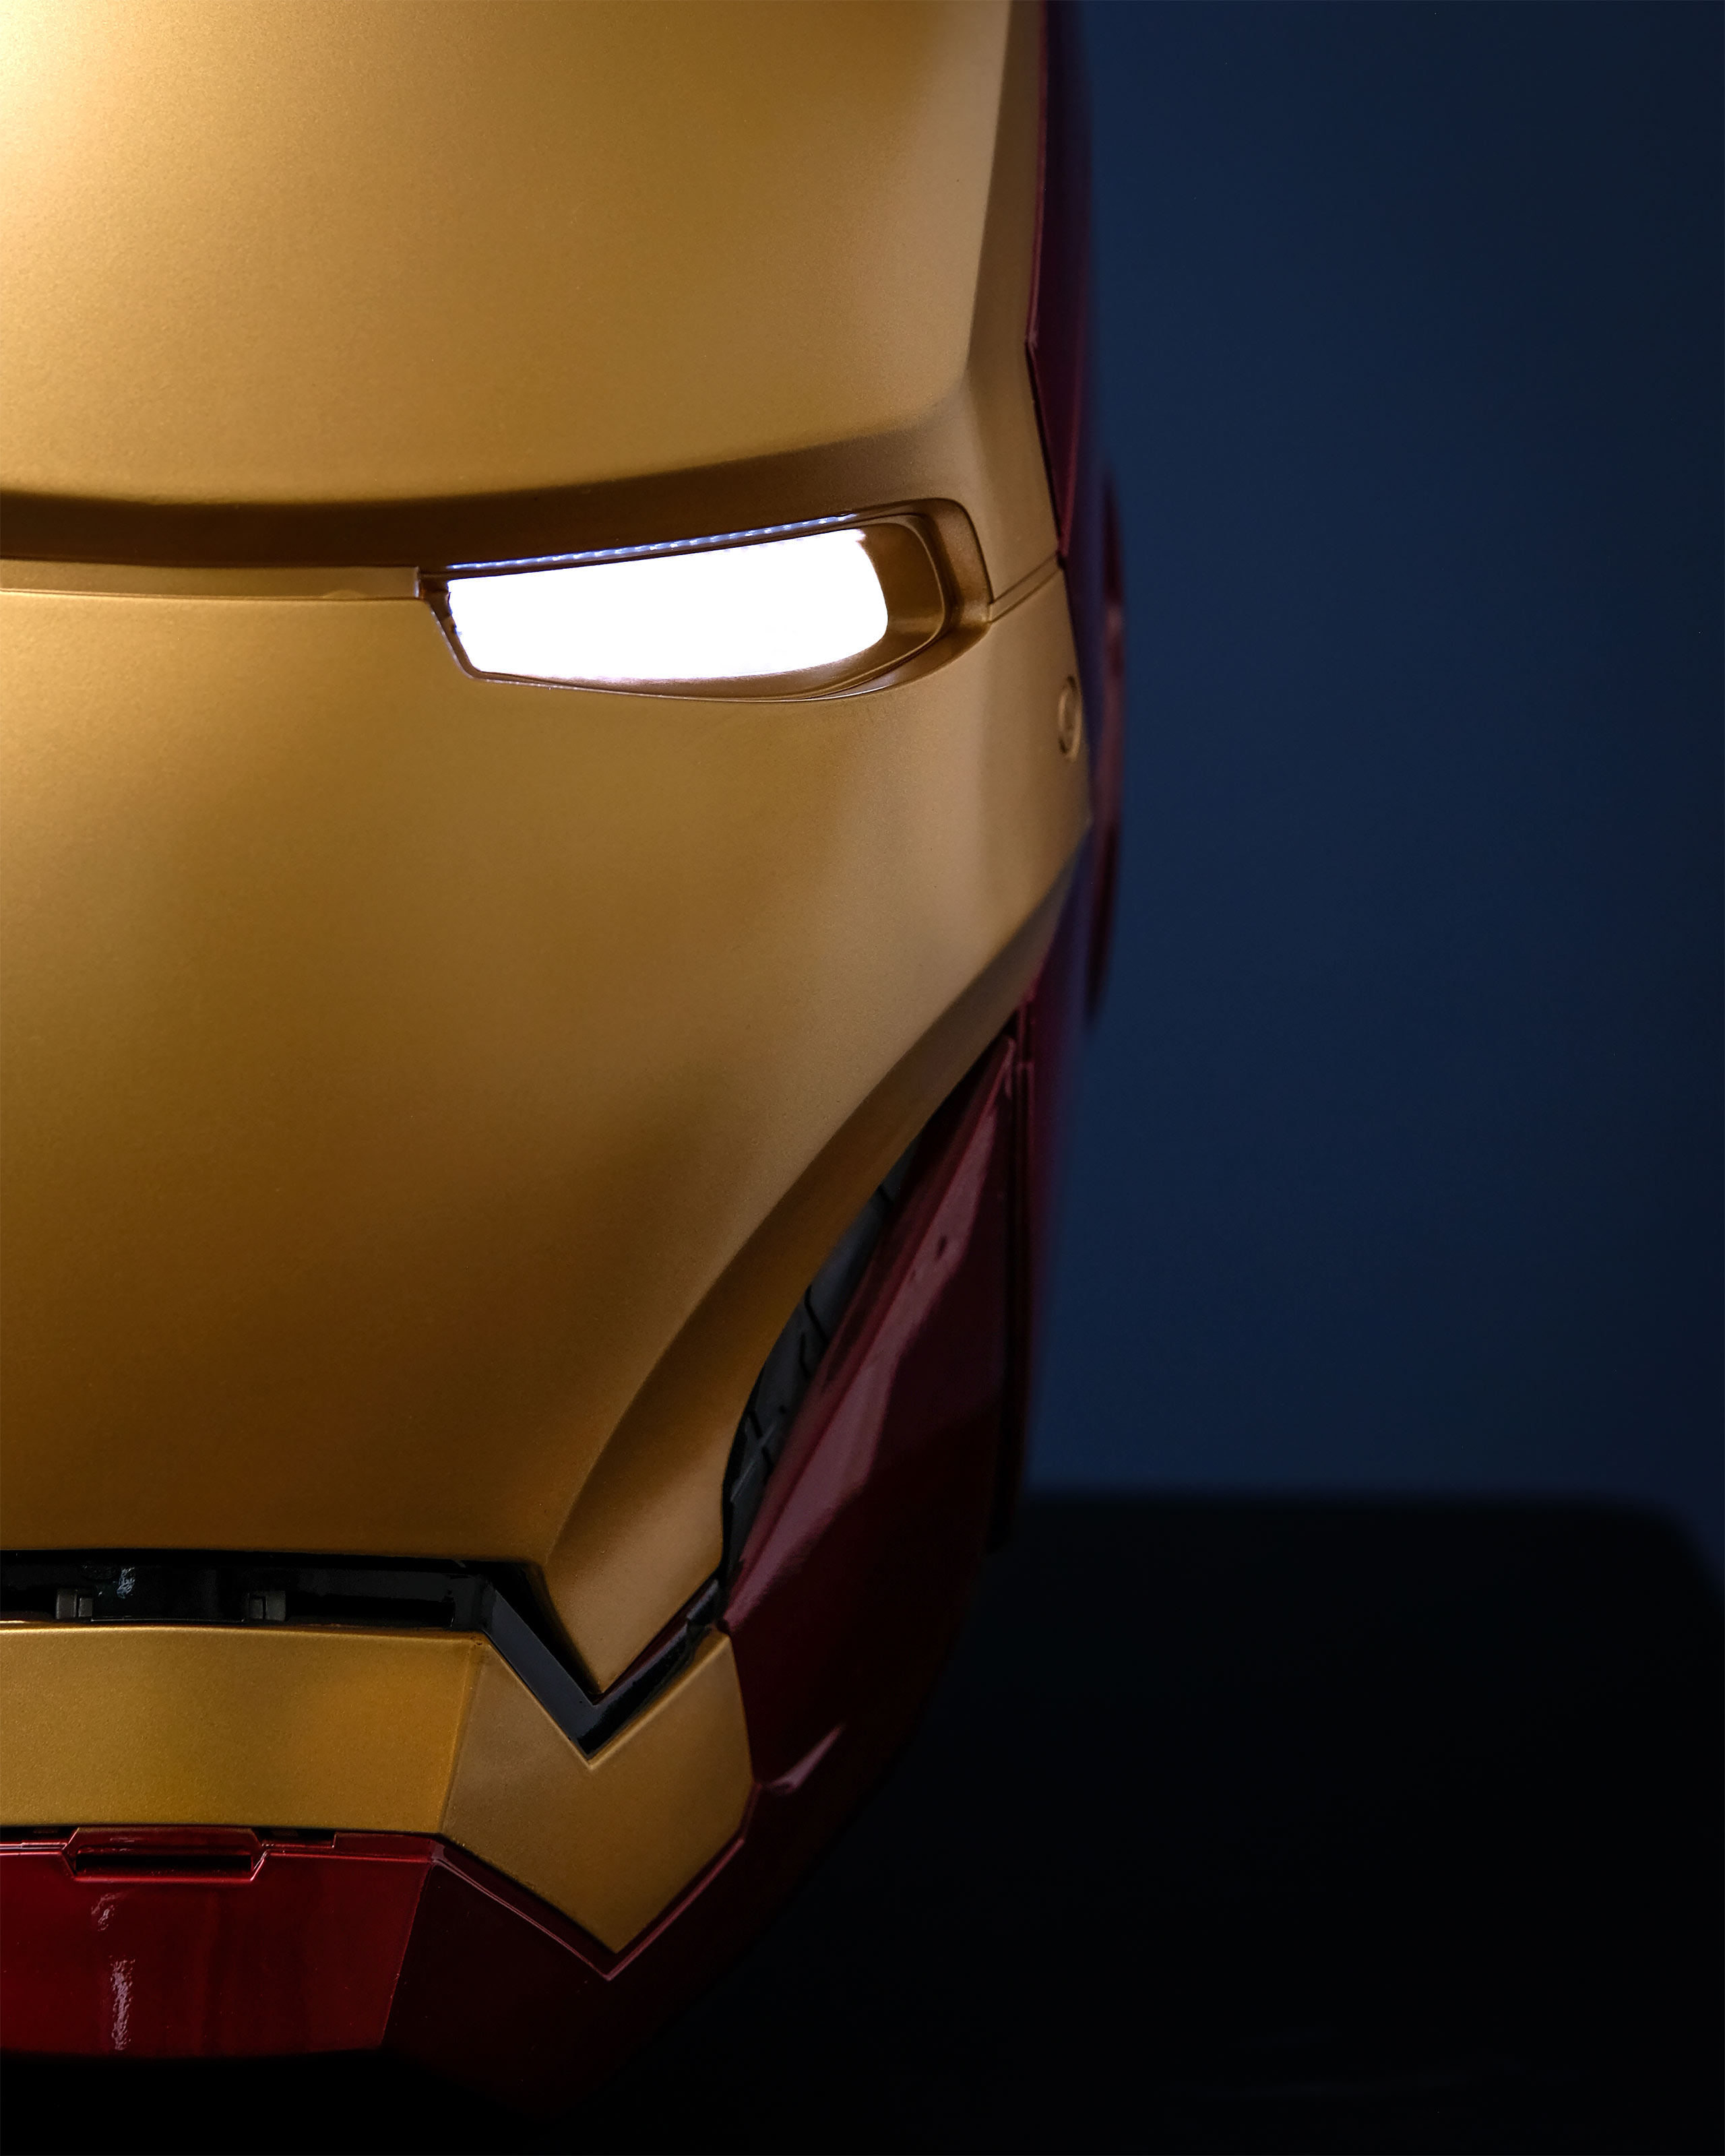 Marvel Legends - Casque Électronique Iron Man